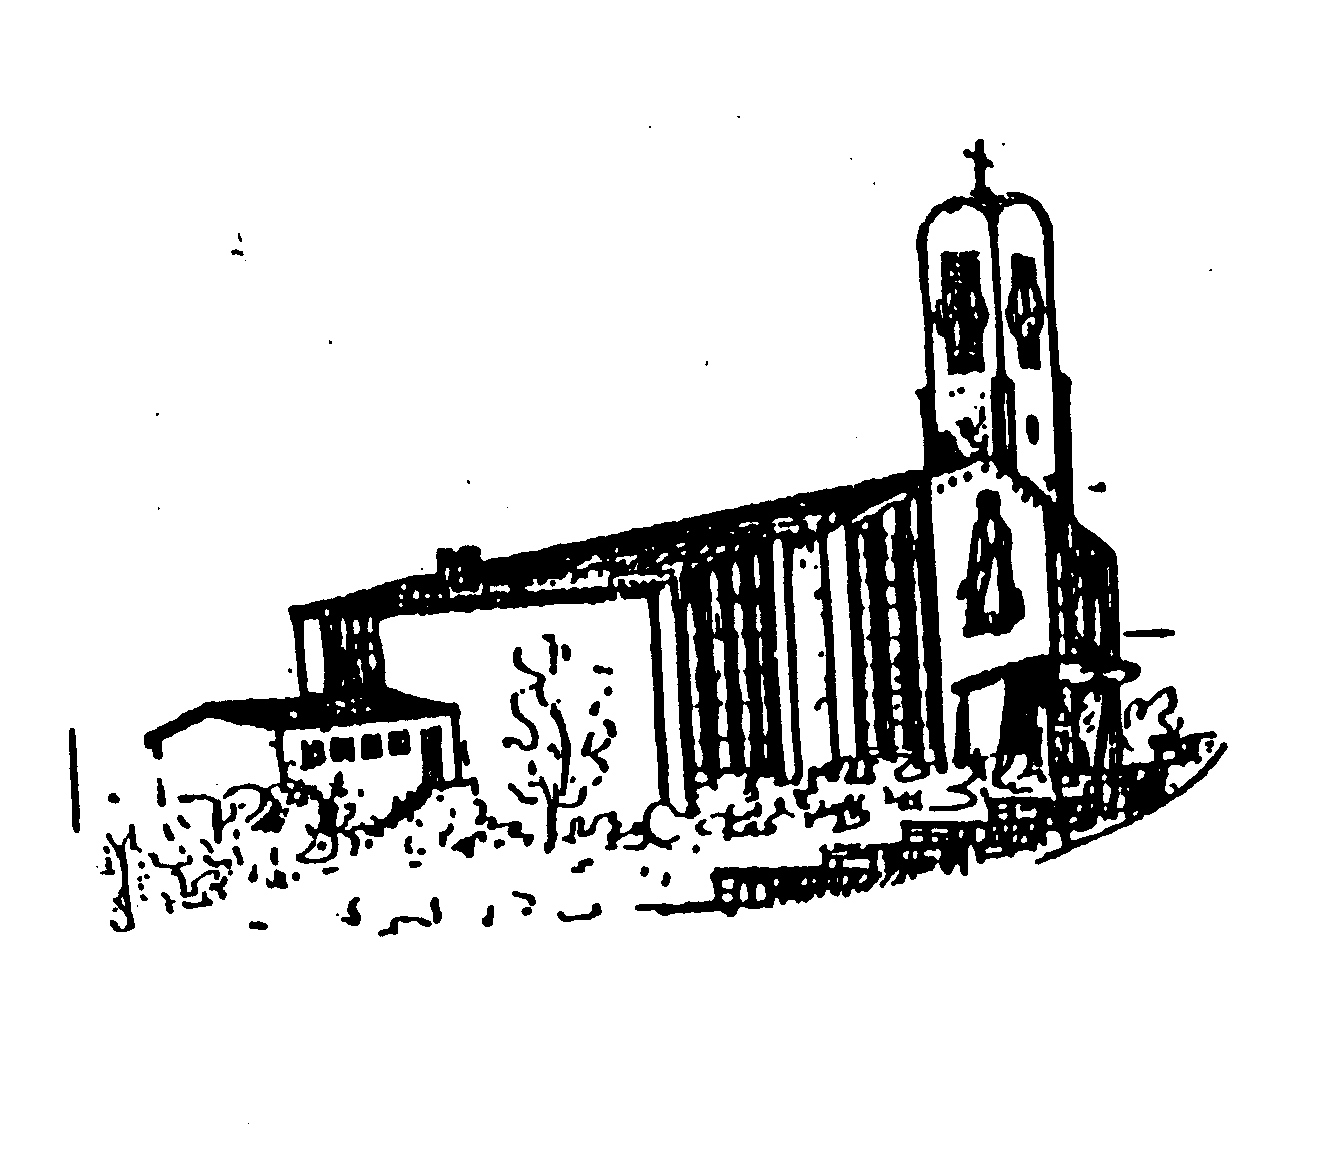 Pfarrkirche St. Peter